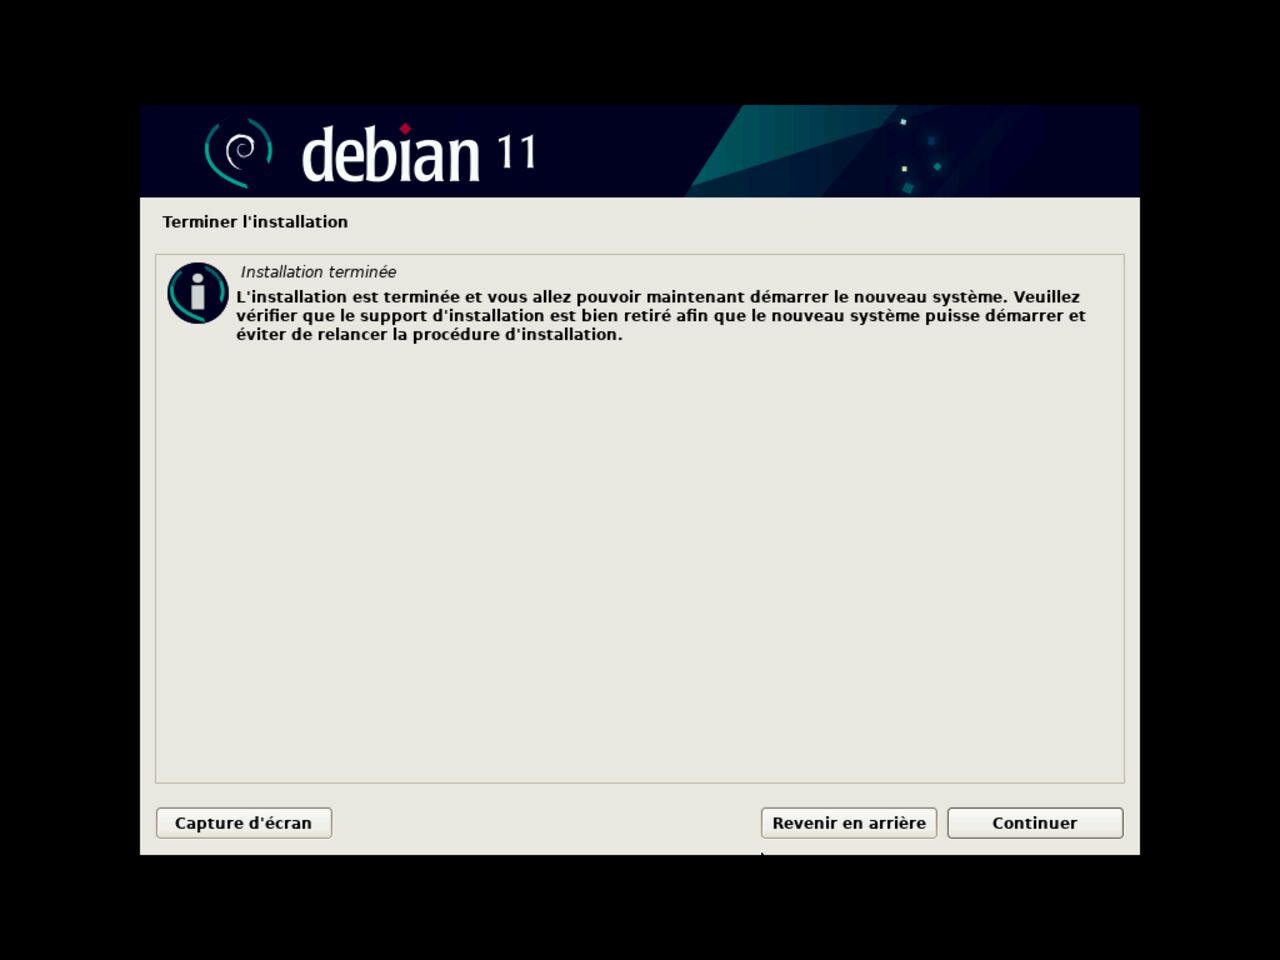 Mon premier ordinateur Linux - Re-initier le système pour continuer l'installation de Debian (shutdown / restart)